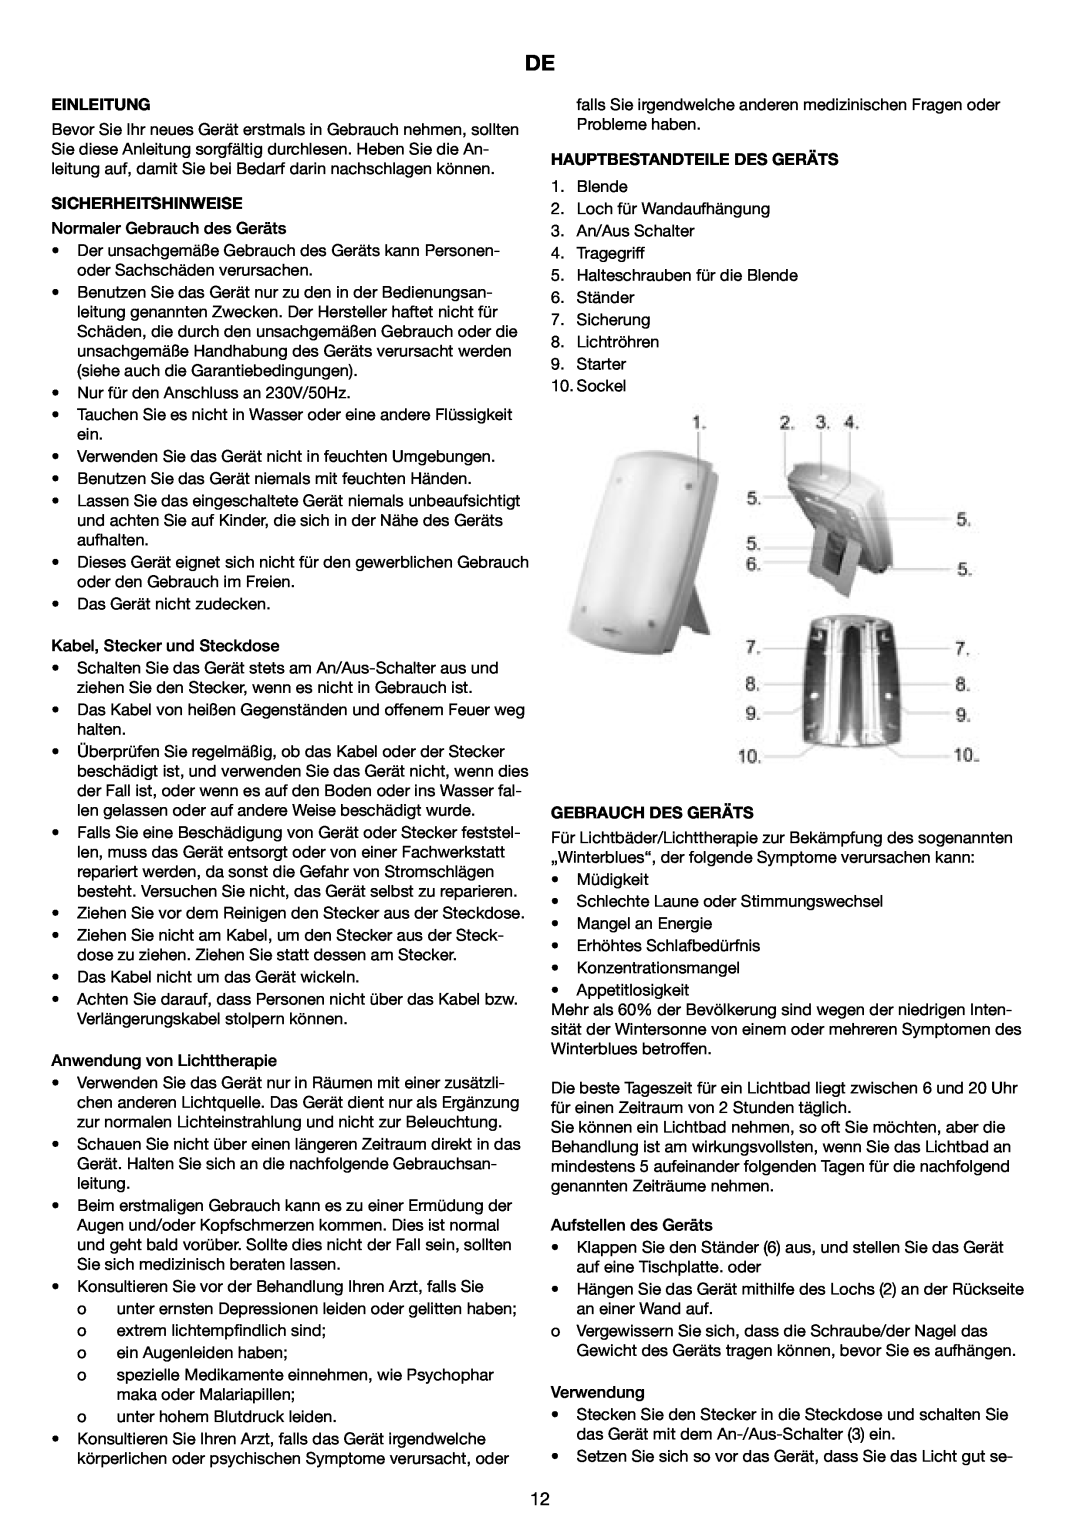 Melissa 637-001 manual Einleitung, Sicherheitshinweise, Hauptbestandteile Des Geräts, Gebrauch Des Geräts 